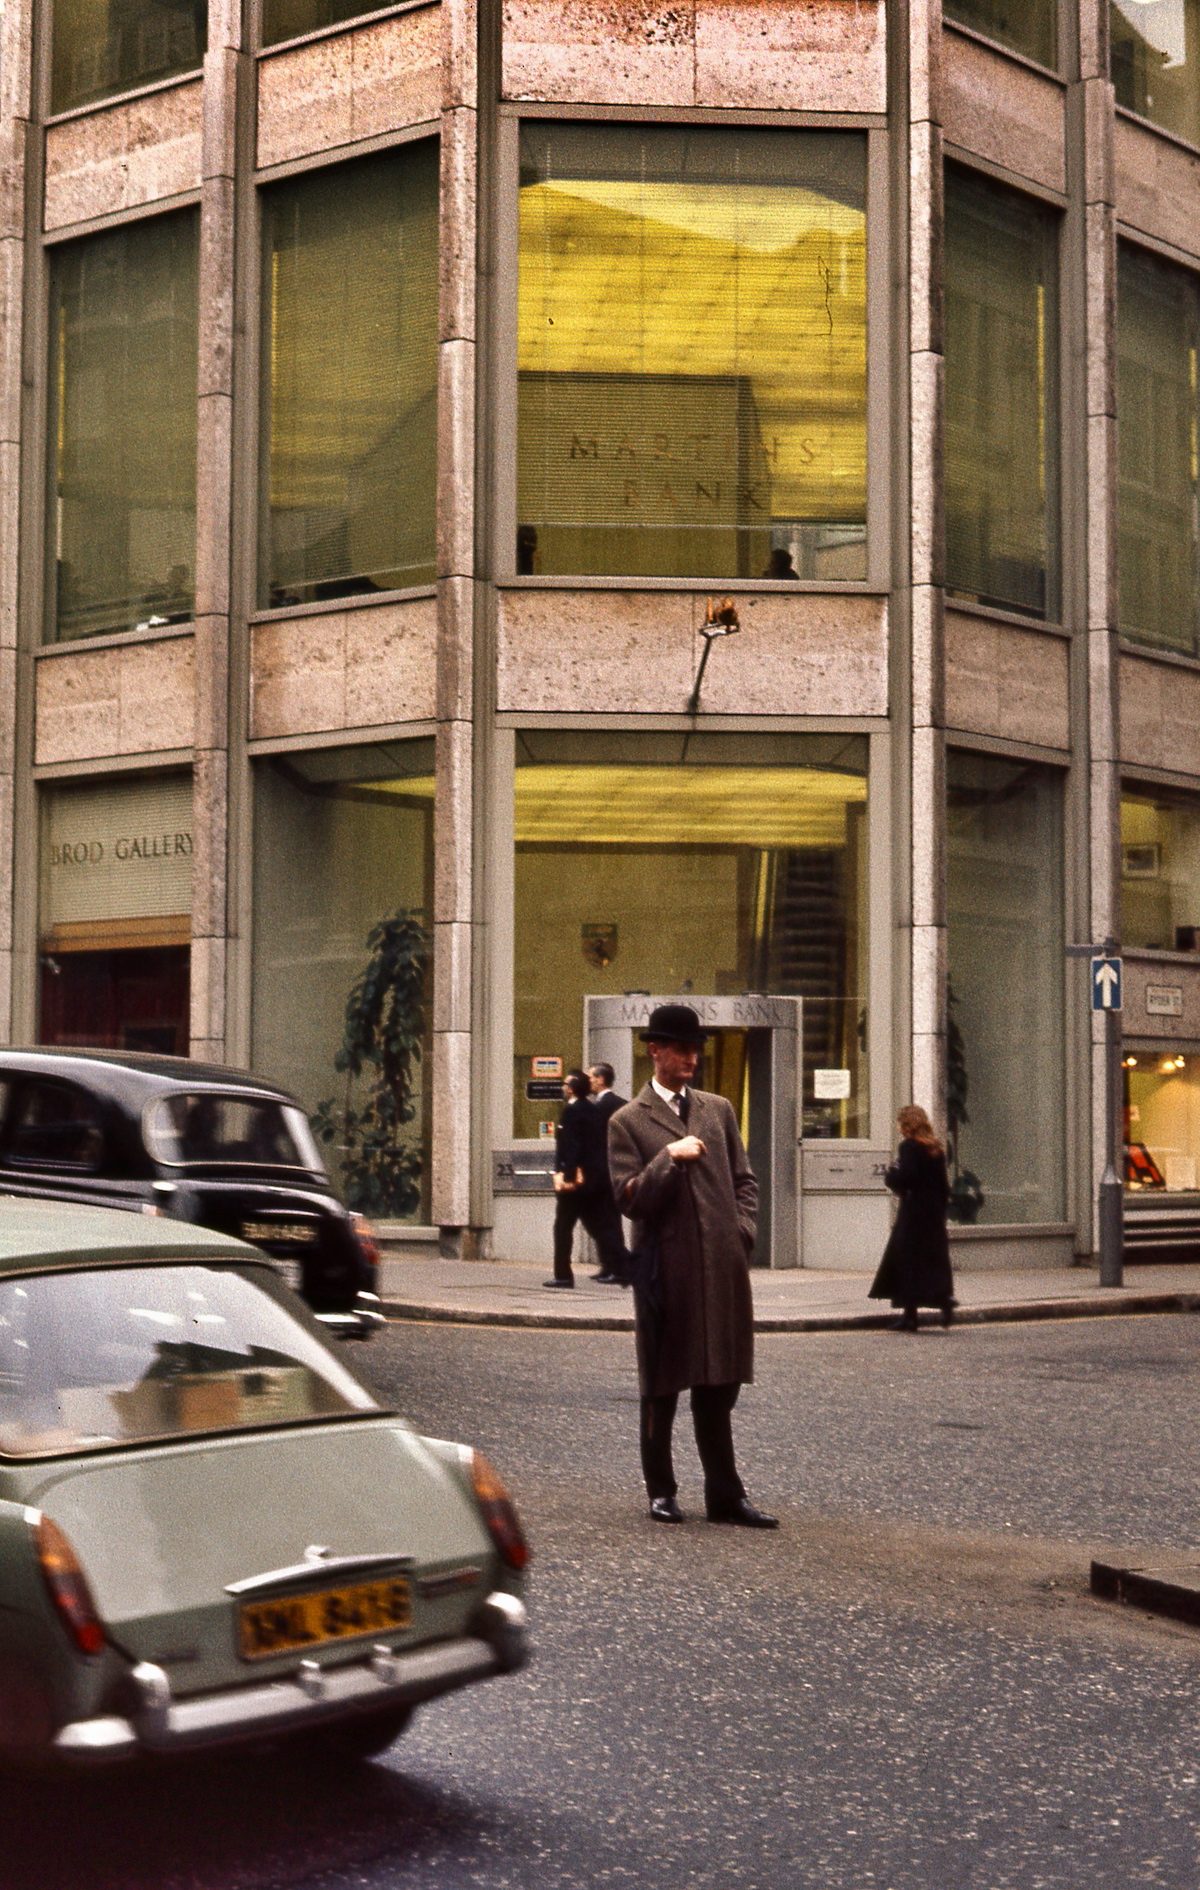 Finance District, London. Feb.1971